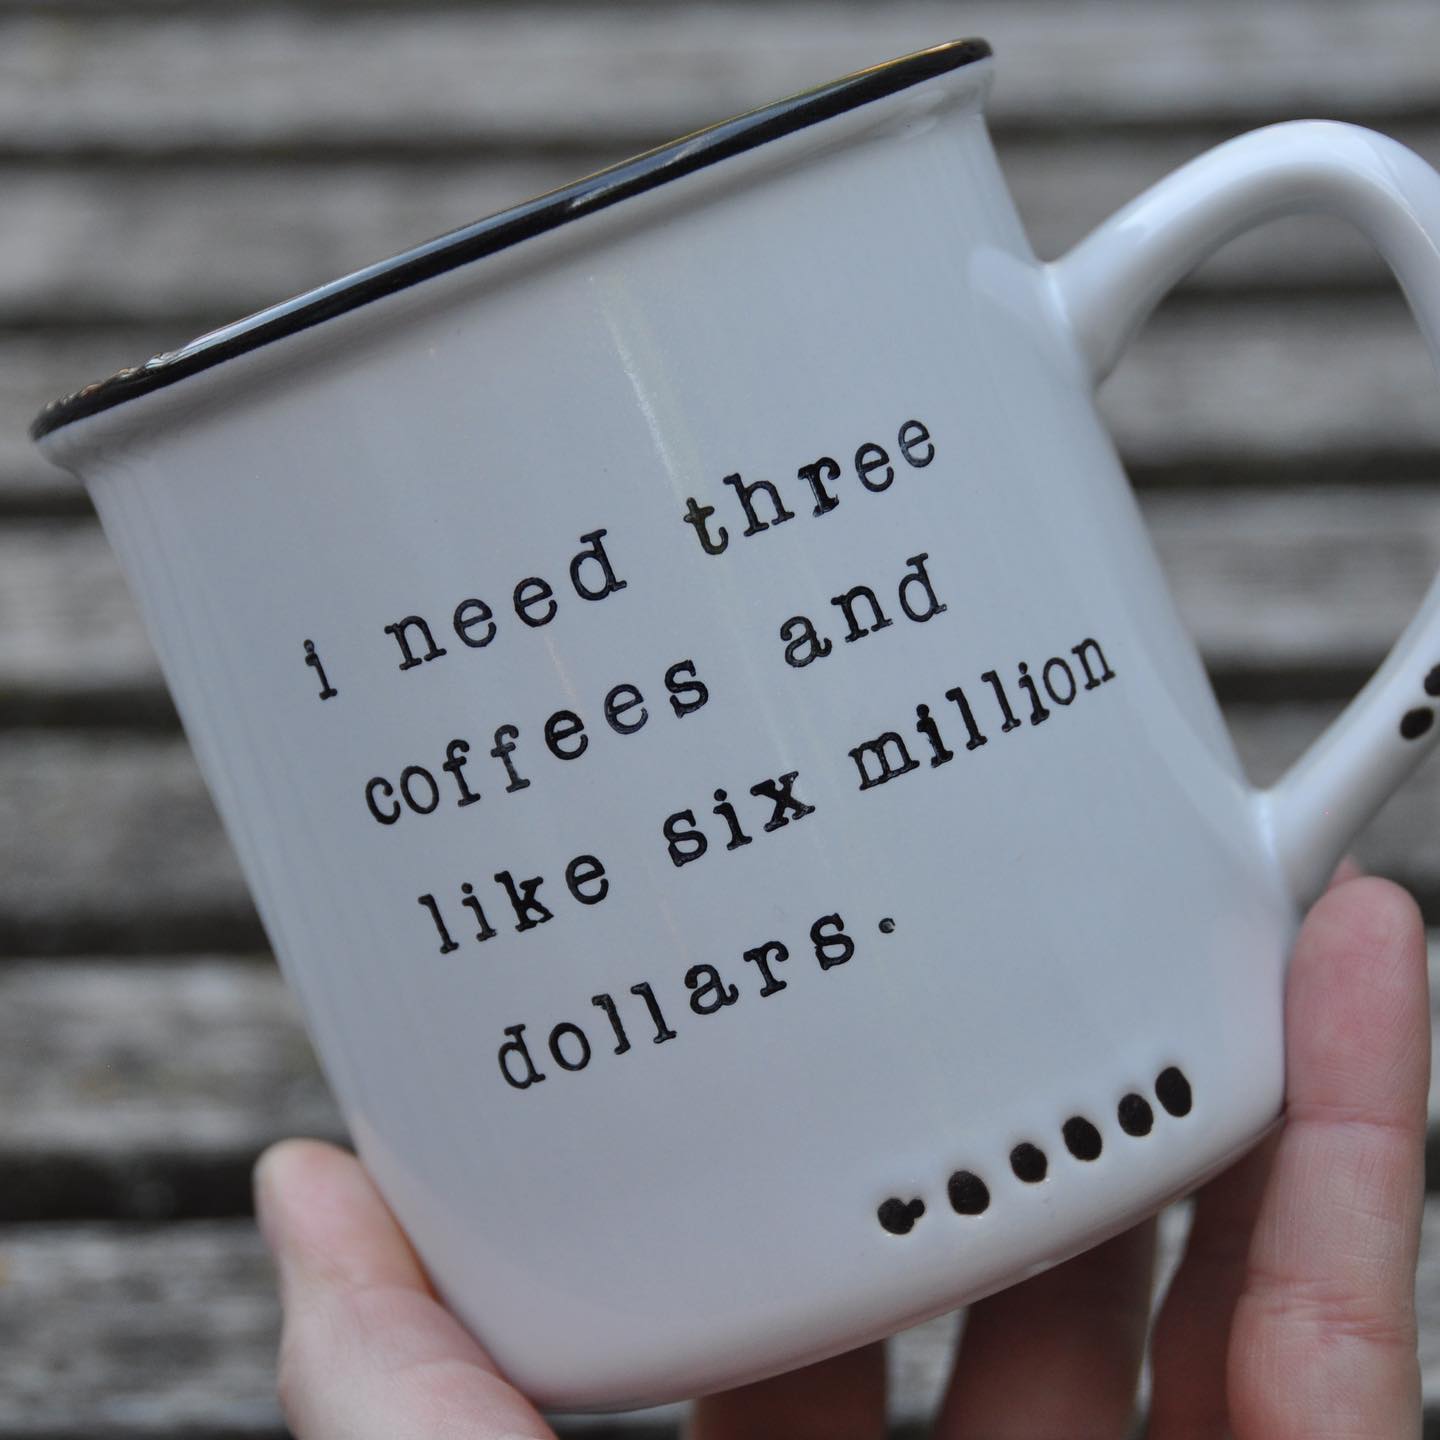 I need three coffees and like six million dollars